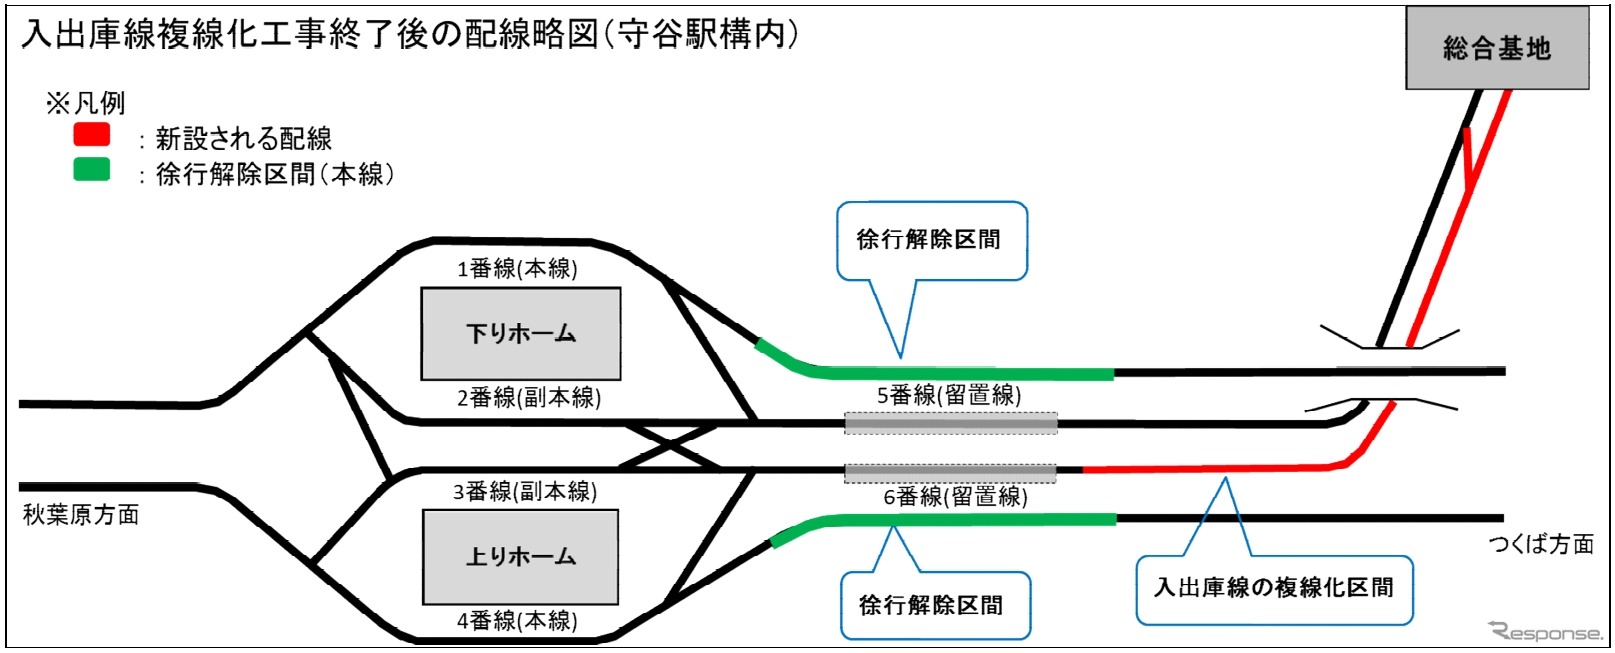 守谷駅付近の線路配線図。入出庫線の複線化工事（赤）に伴い実施されていた徐行運転（緑）も解除される。